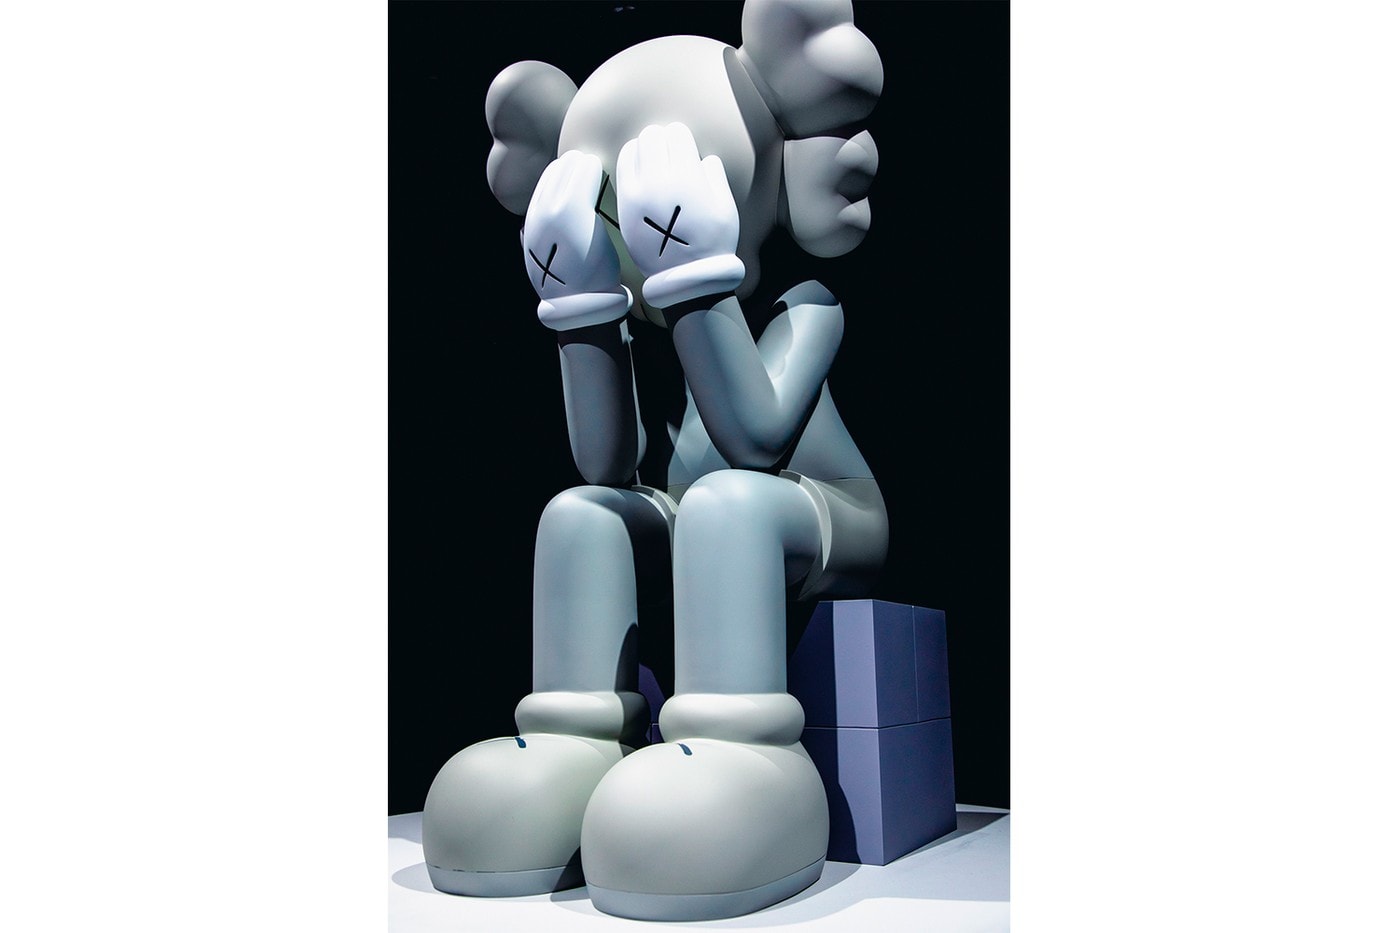 KAWS: ALONG THE WAY Hong Kong Exhibition Companion Sculpture Grey White